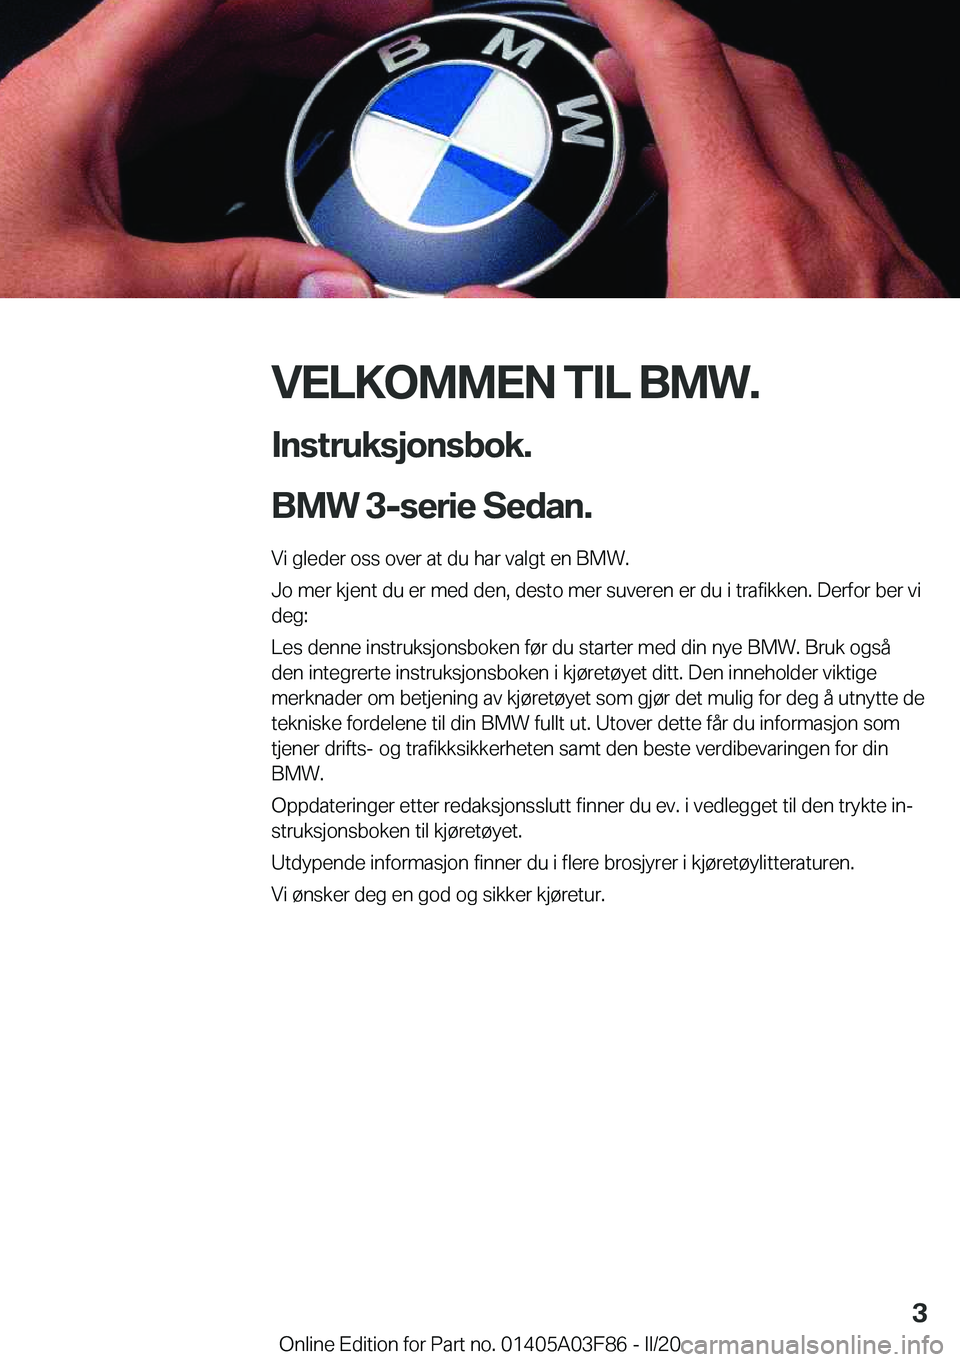 BMW 3 SERIES 2020  InstruksjonsbØker (in Norwegian) �V�E�L�K�O�M�M�E�N��T�I�L��B�M�W�.�I�n�s�t�r�u�k�s�j�o�n�s�b�o�k�.
�B�M�W��3�-�s�e�r�i�e��S�e�d�a�n�.
�V�i��g�l�e�d�e�r��o�s�s��o�v�e�r��a�t��d�u��h�a�r��v�a�l�g�t��e�n��B�M�W�.
�J�o��m�